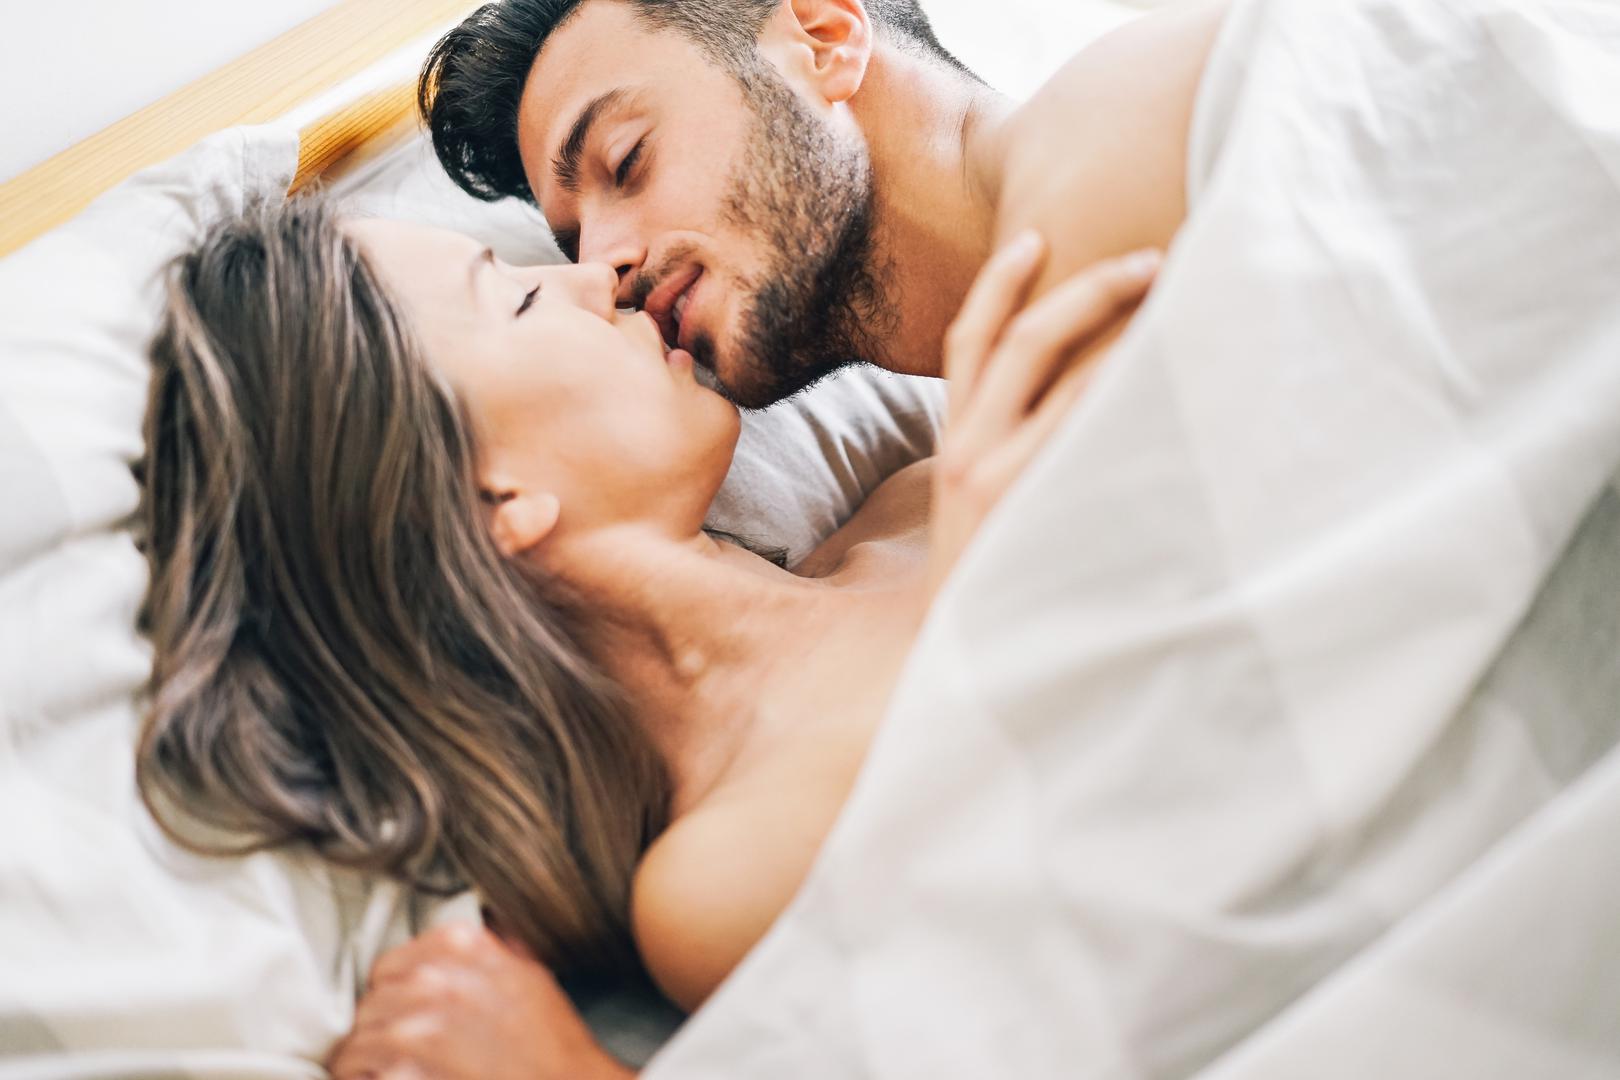 Ljudi koji vode ljubav četiri ili više puta tjedno zarađuju više, pokazala su istraživanja. Nick Drydakis s Instituta za istraživanje rada proveo je istraživanje na 7.500 kućanstava u Grčkoj i između ostalog istražio vezu između seksa i financijskih primanja.